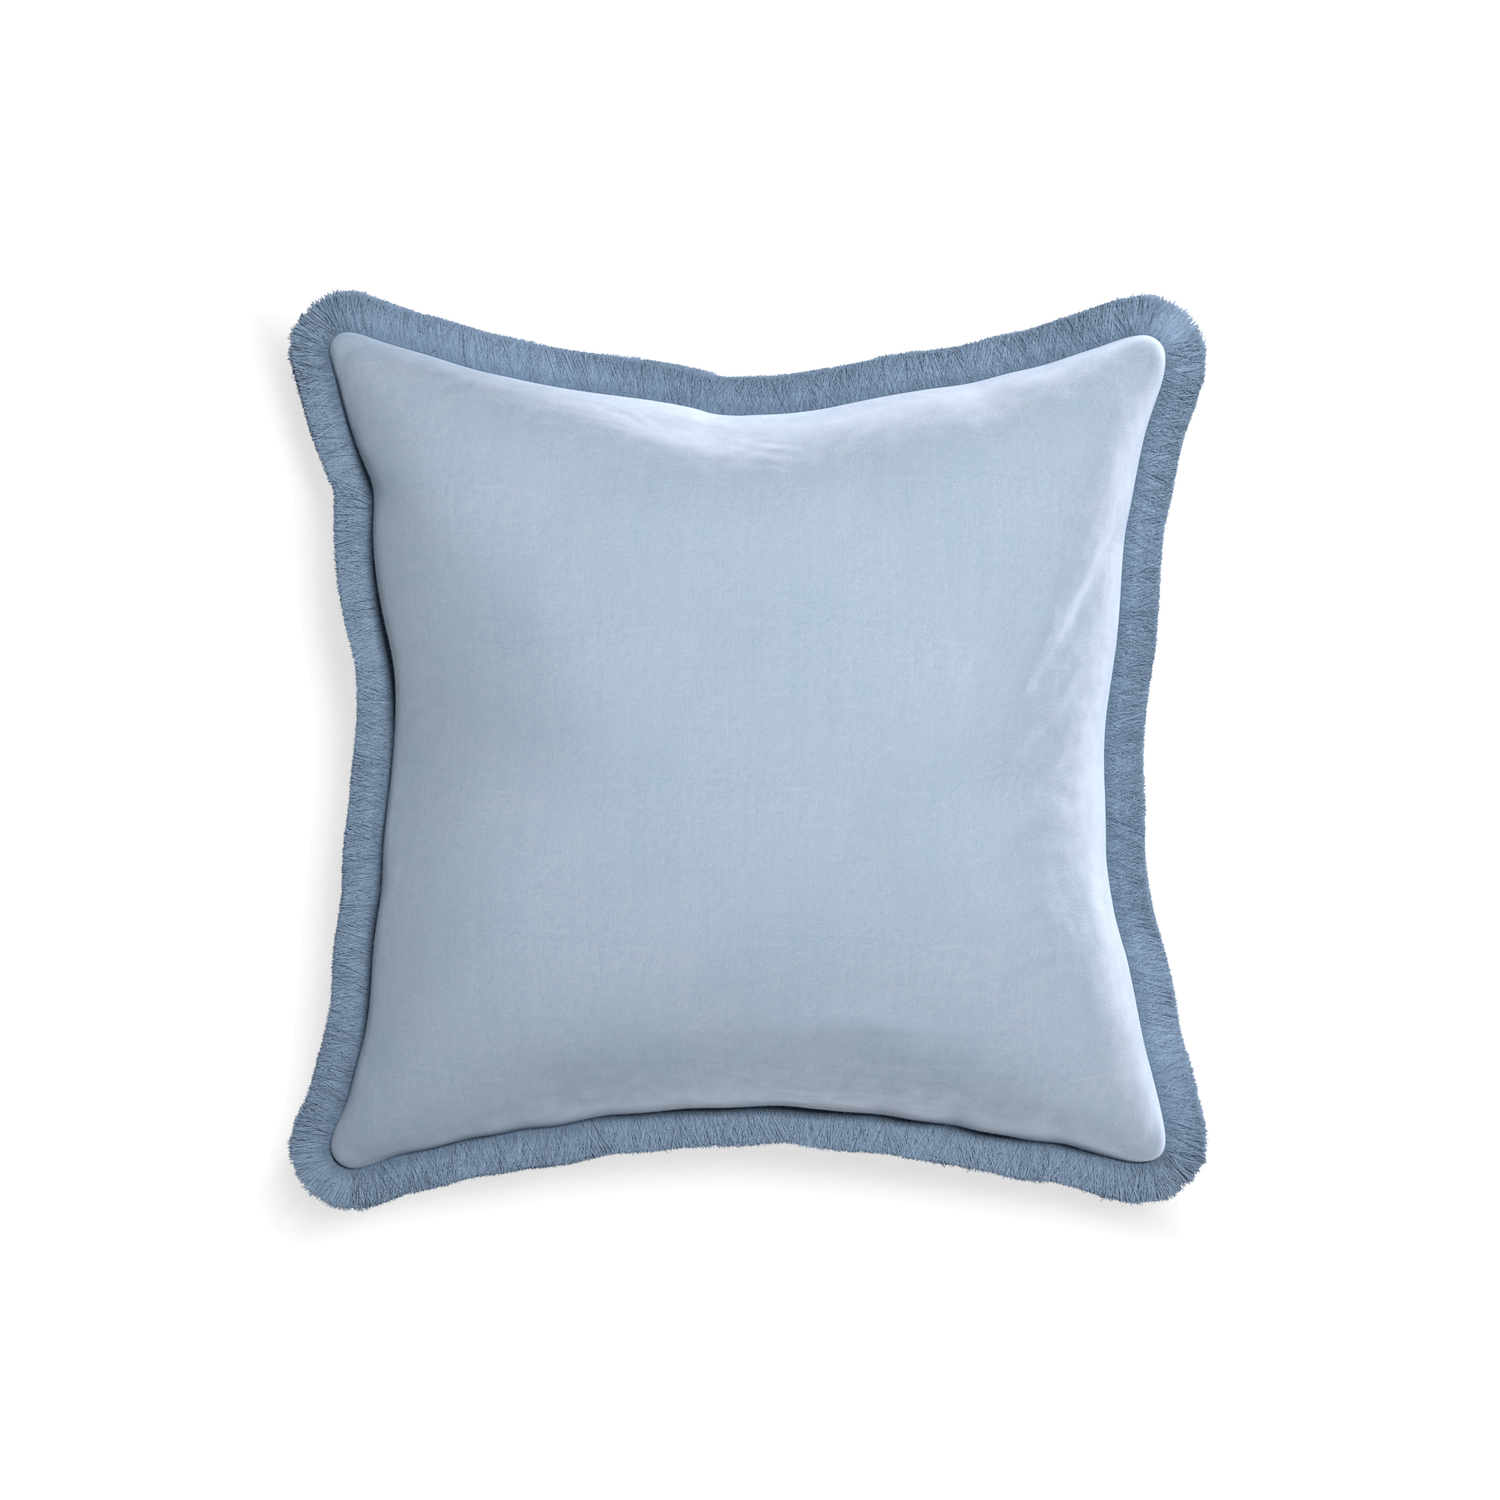 18-square sky velvet custom pillow with sky fringe on white background